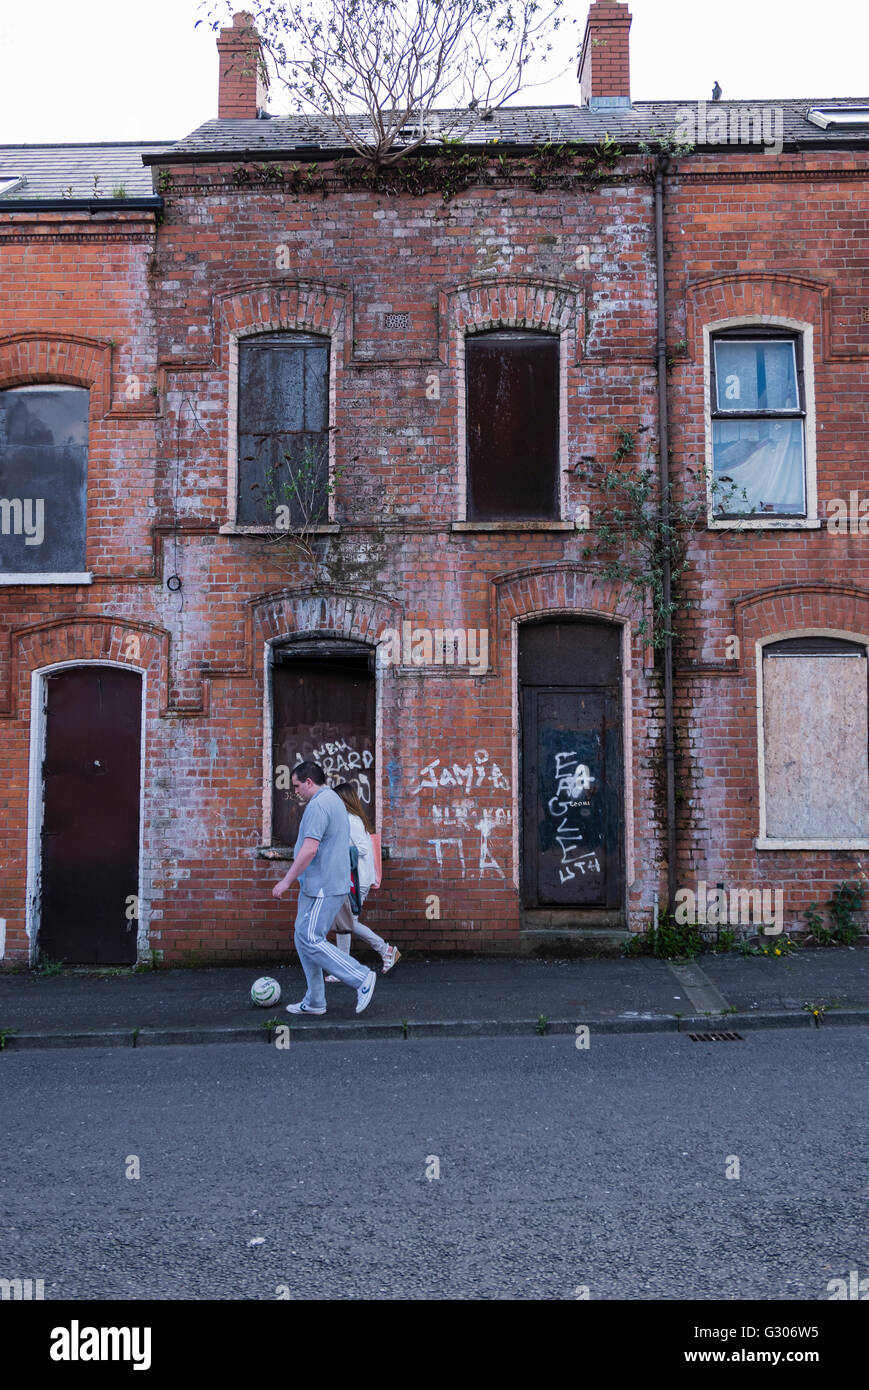 Deux personnes à pied le long de botter un football en face d'une maison à l'abandon jusqu'à bord de plaques d'acier, écrit plus de graffitis. Banque D'Images